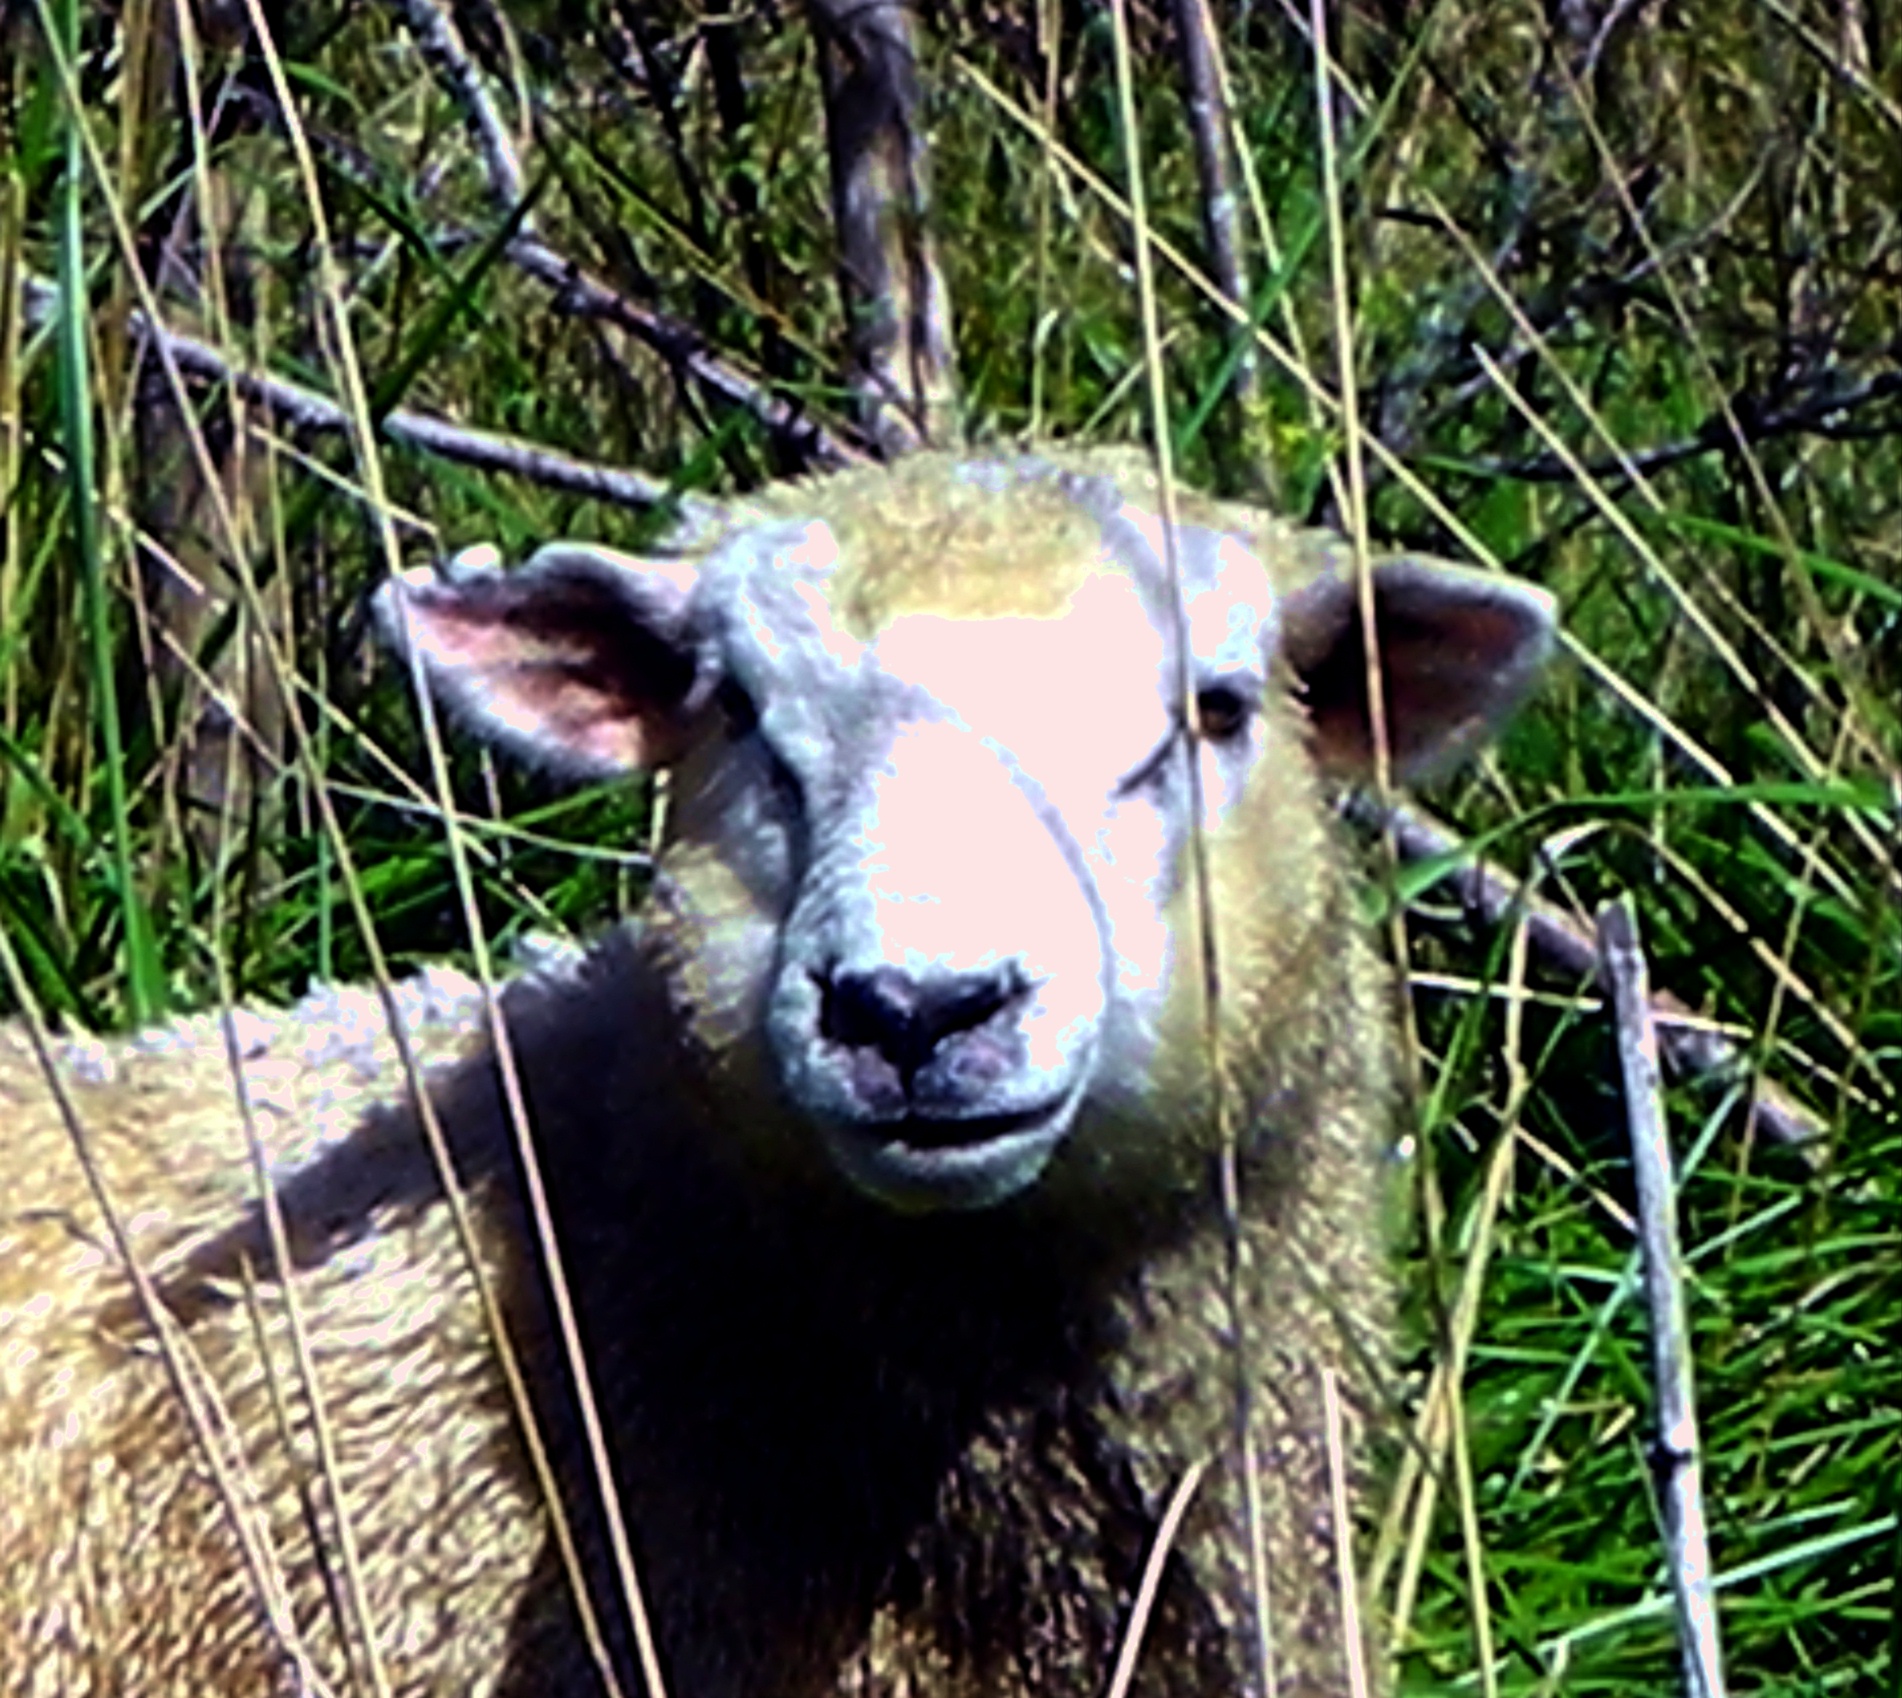 Wanganui River Road - Sheep